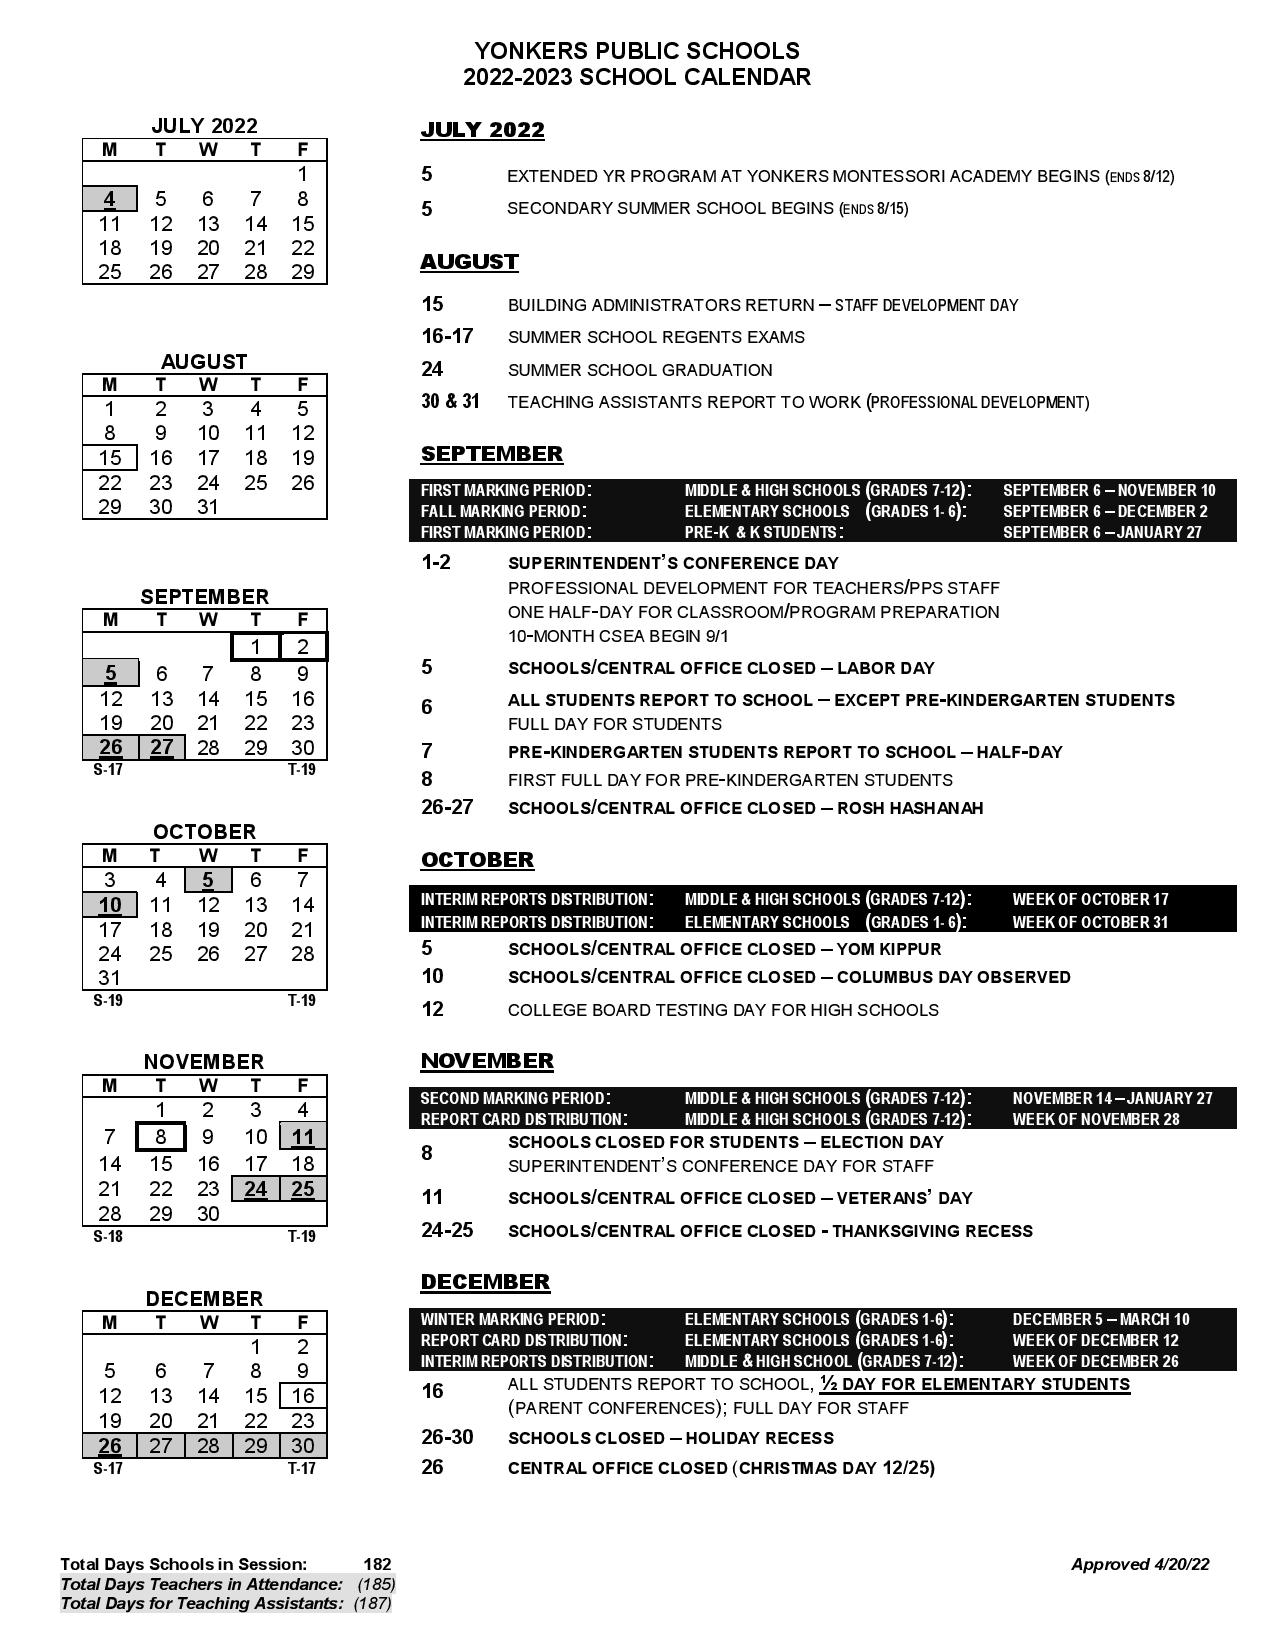 Yonkers Public Schools Calendar 2022 2023 In PDF